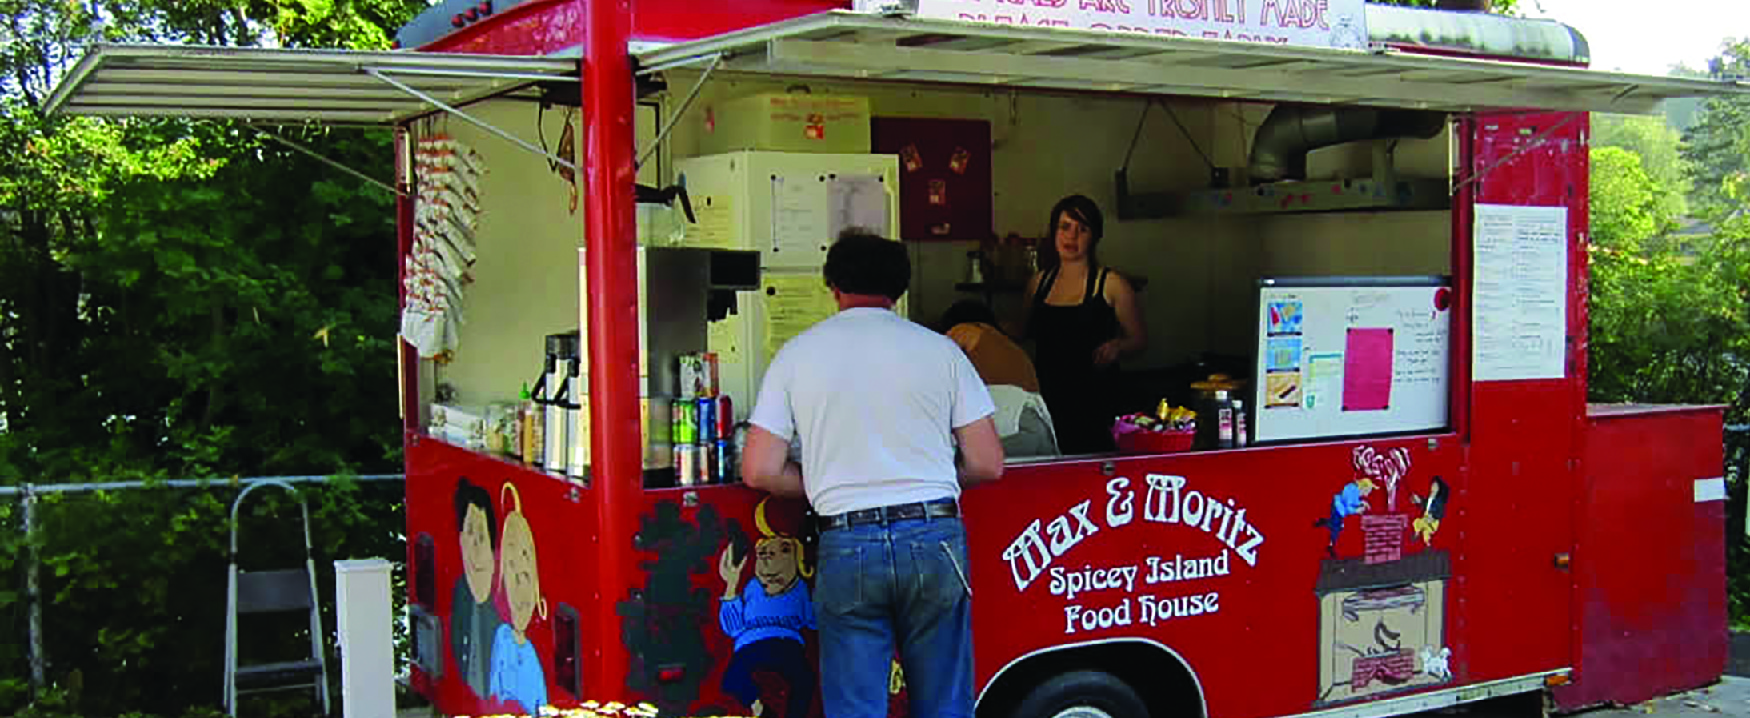 Imagen de dos personas en un camión de comida al servicio de un cliente.